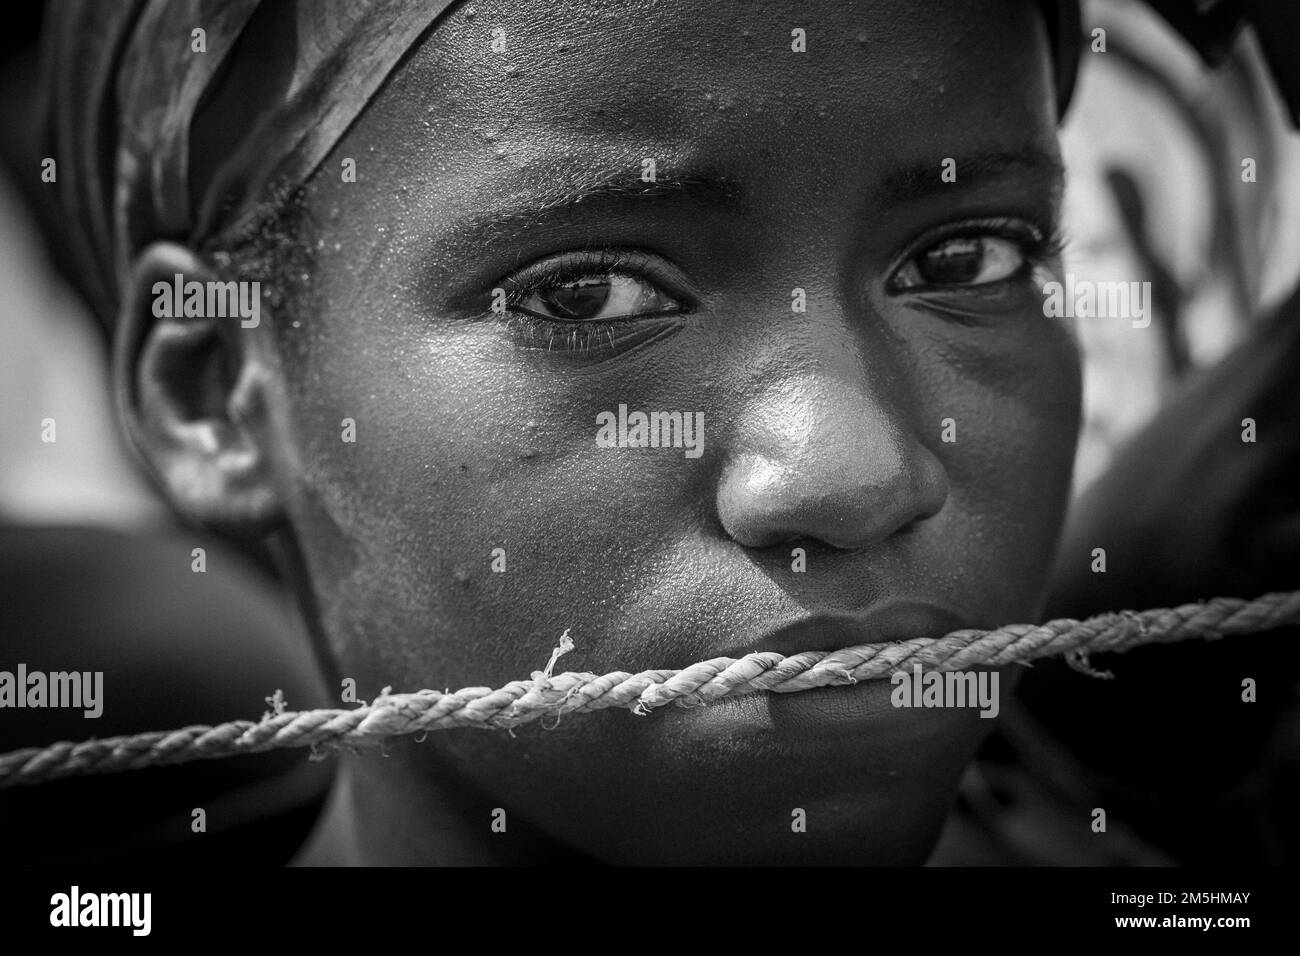 Nahaufnahme eines jungen Mädchens mit einem Seil über seinem Mund, das zum Schweigen gebracht wird Stockfoto